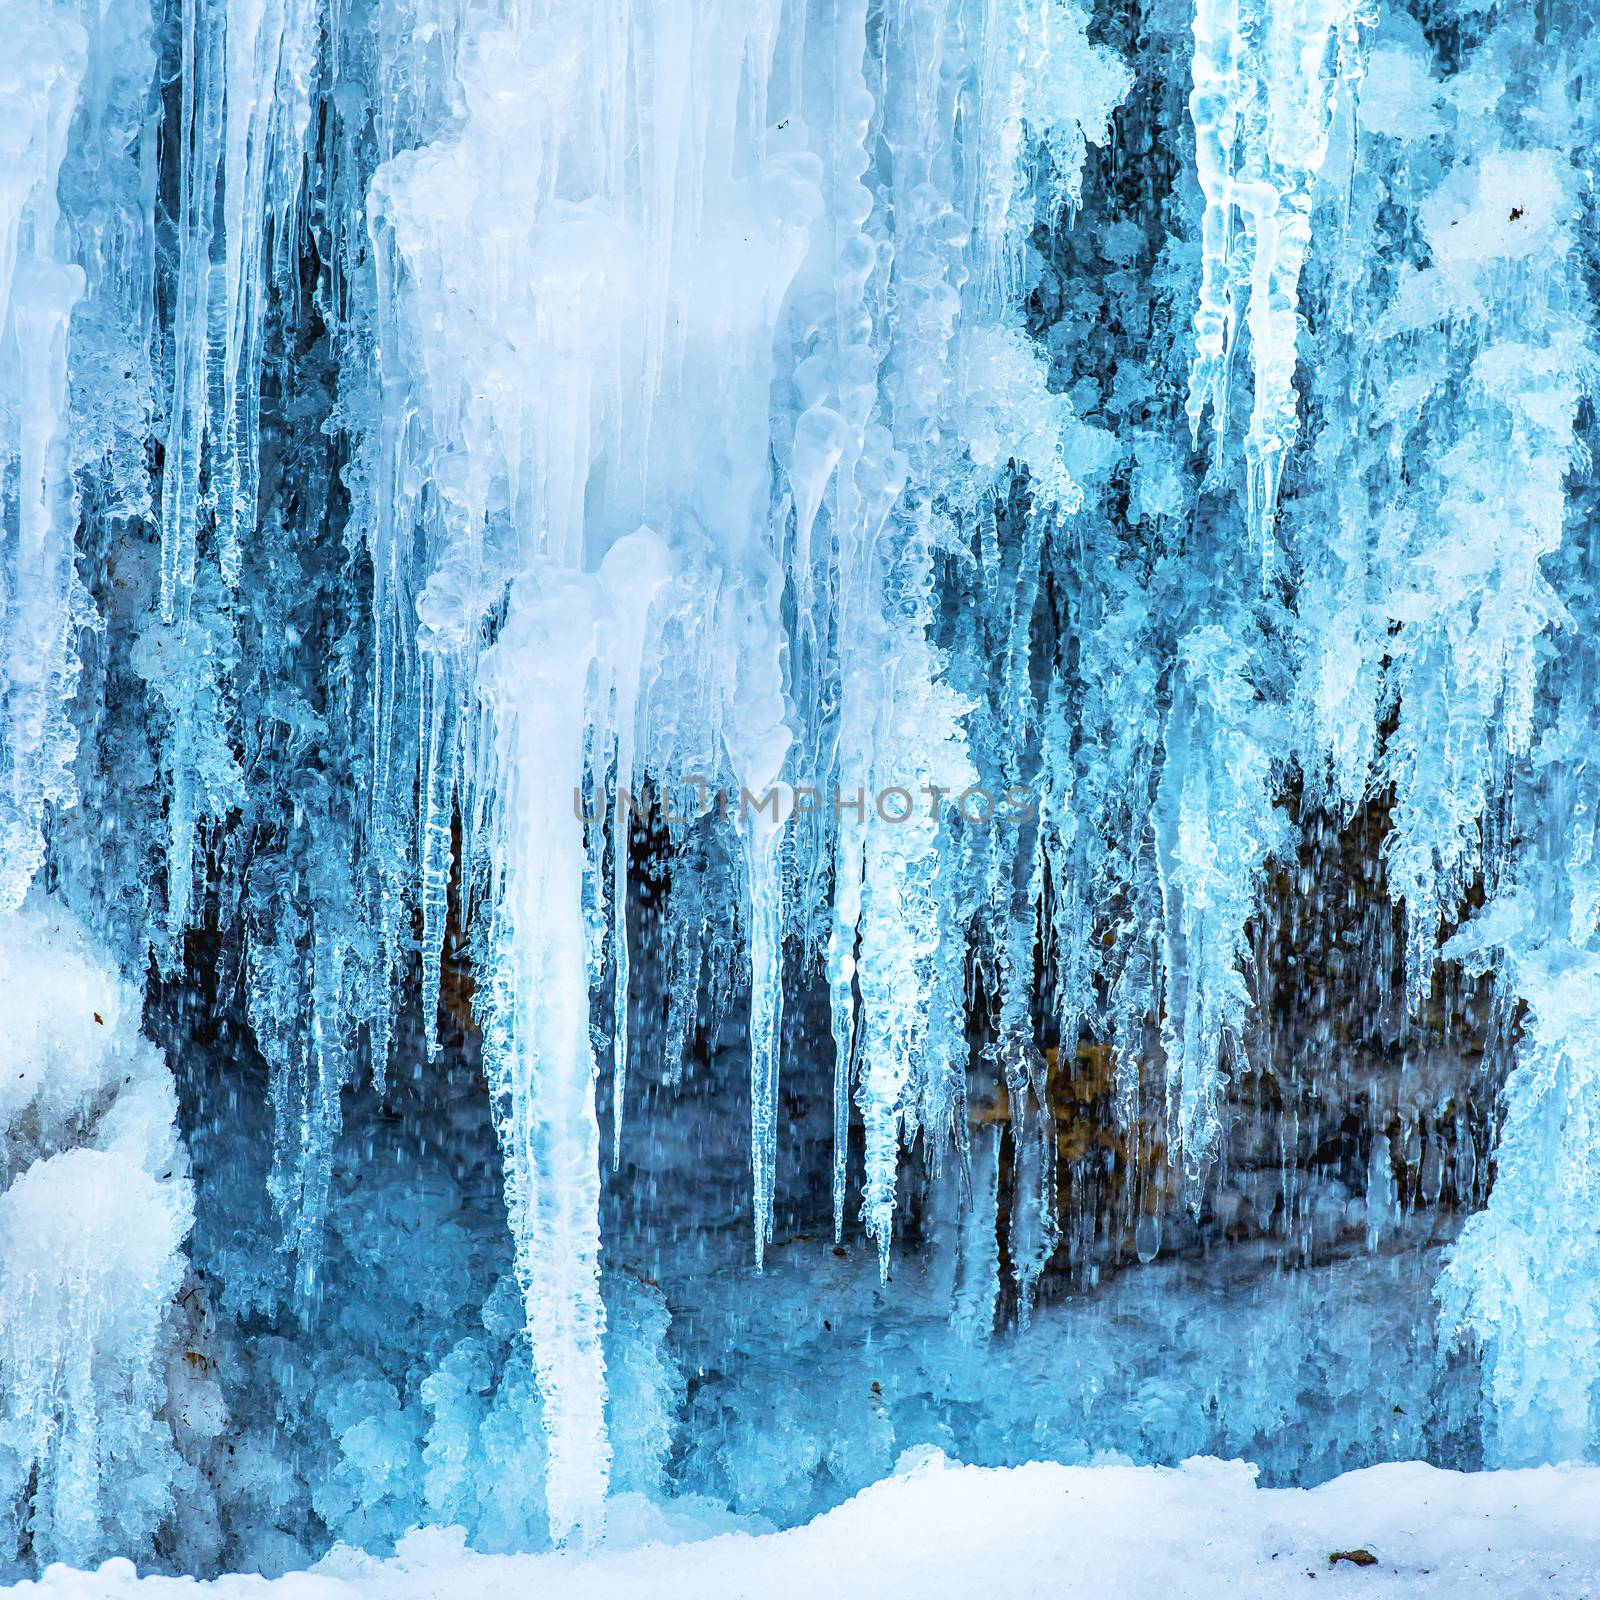 Frozen ice waterfall by vapi